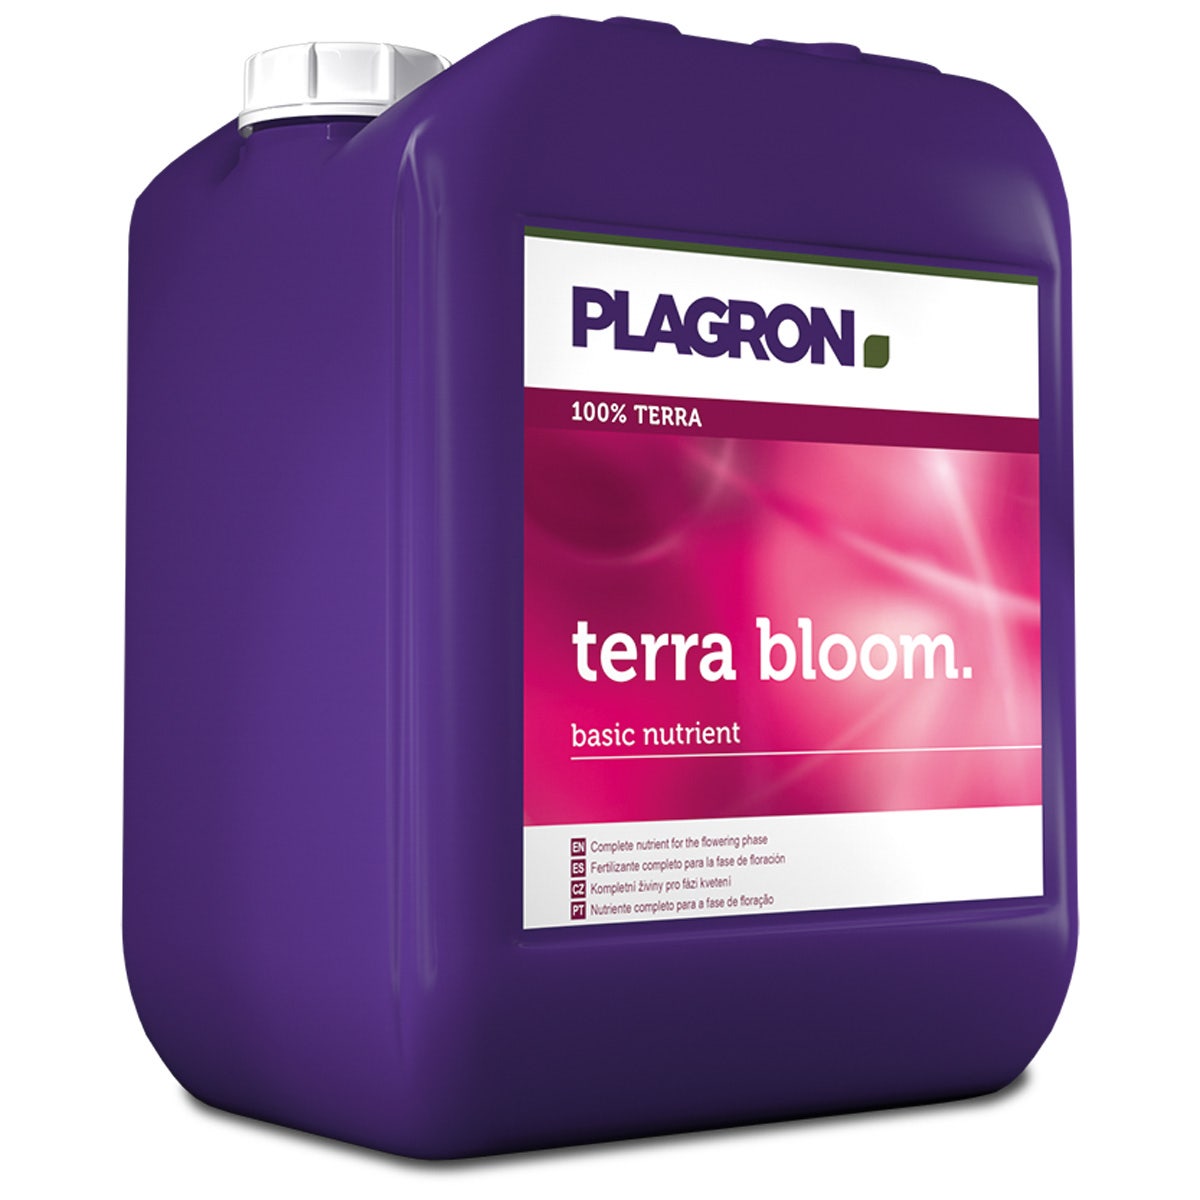 Plagron Nutrients - Terra Bloom